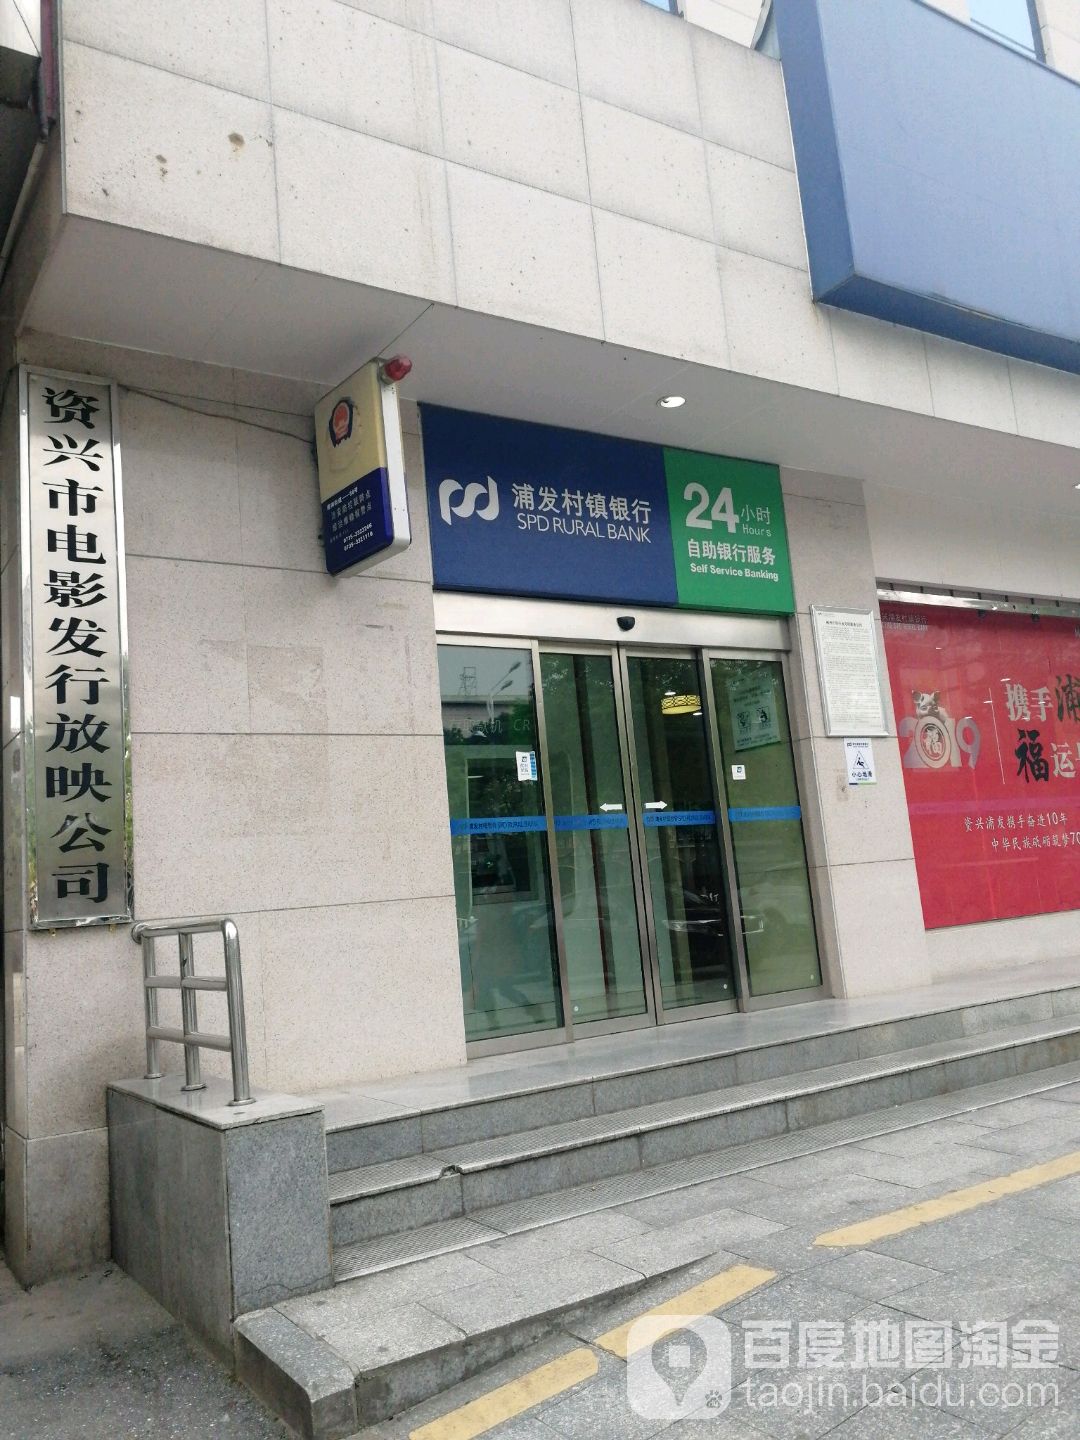 浦发村镇银行24小时自助银行服务(东江中路总行)